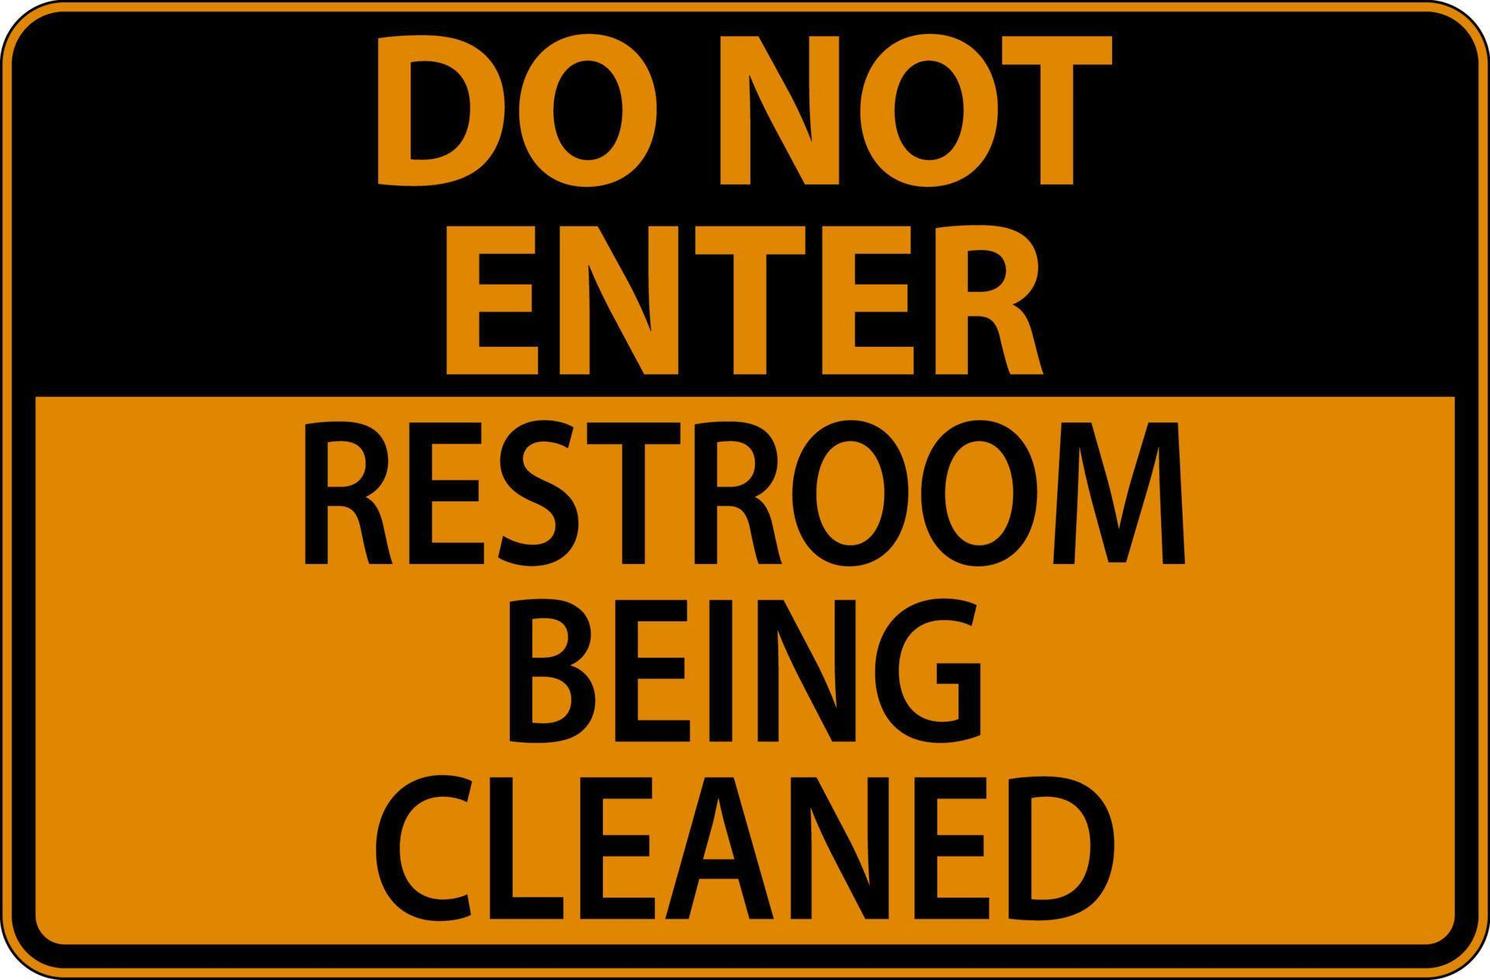 Doen niet invoeren toilet wezen schoongemaakt teken vector